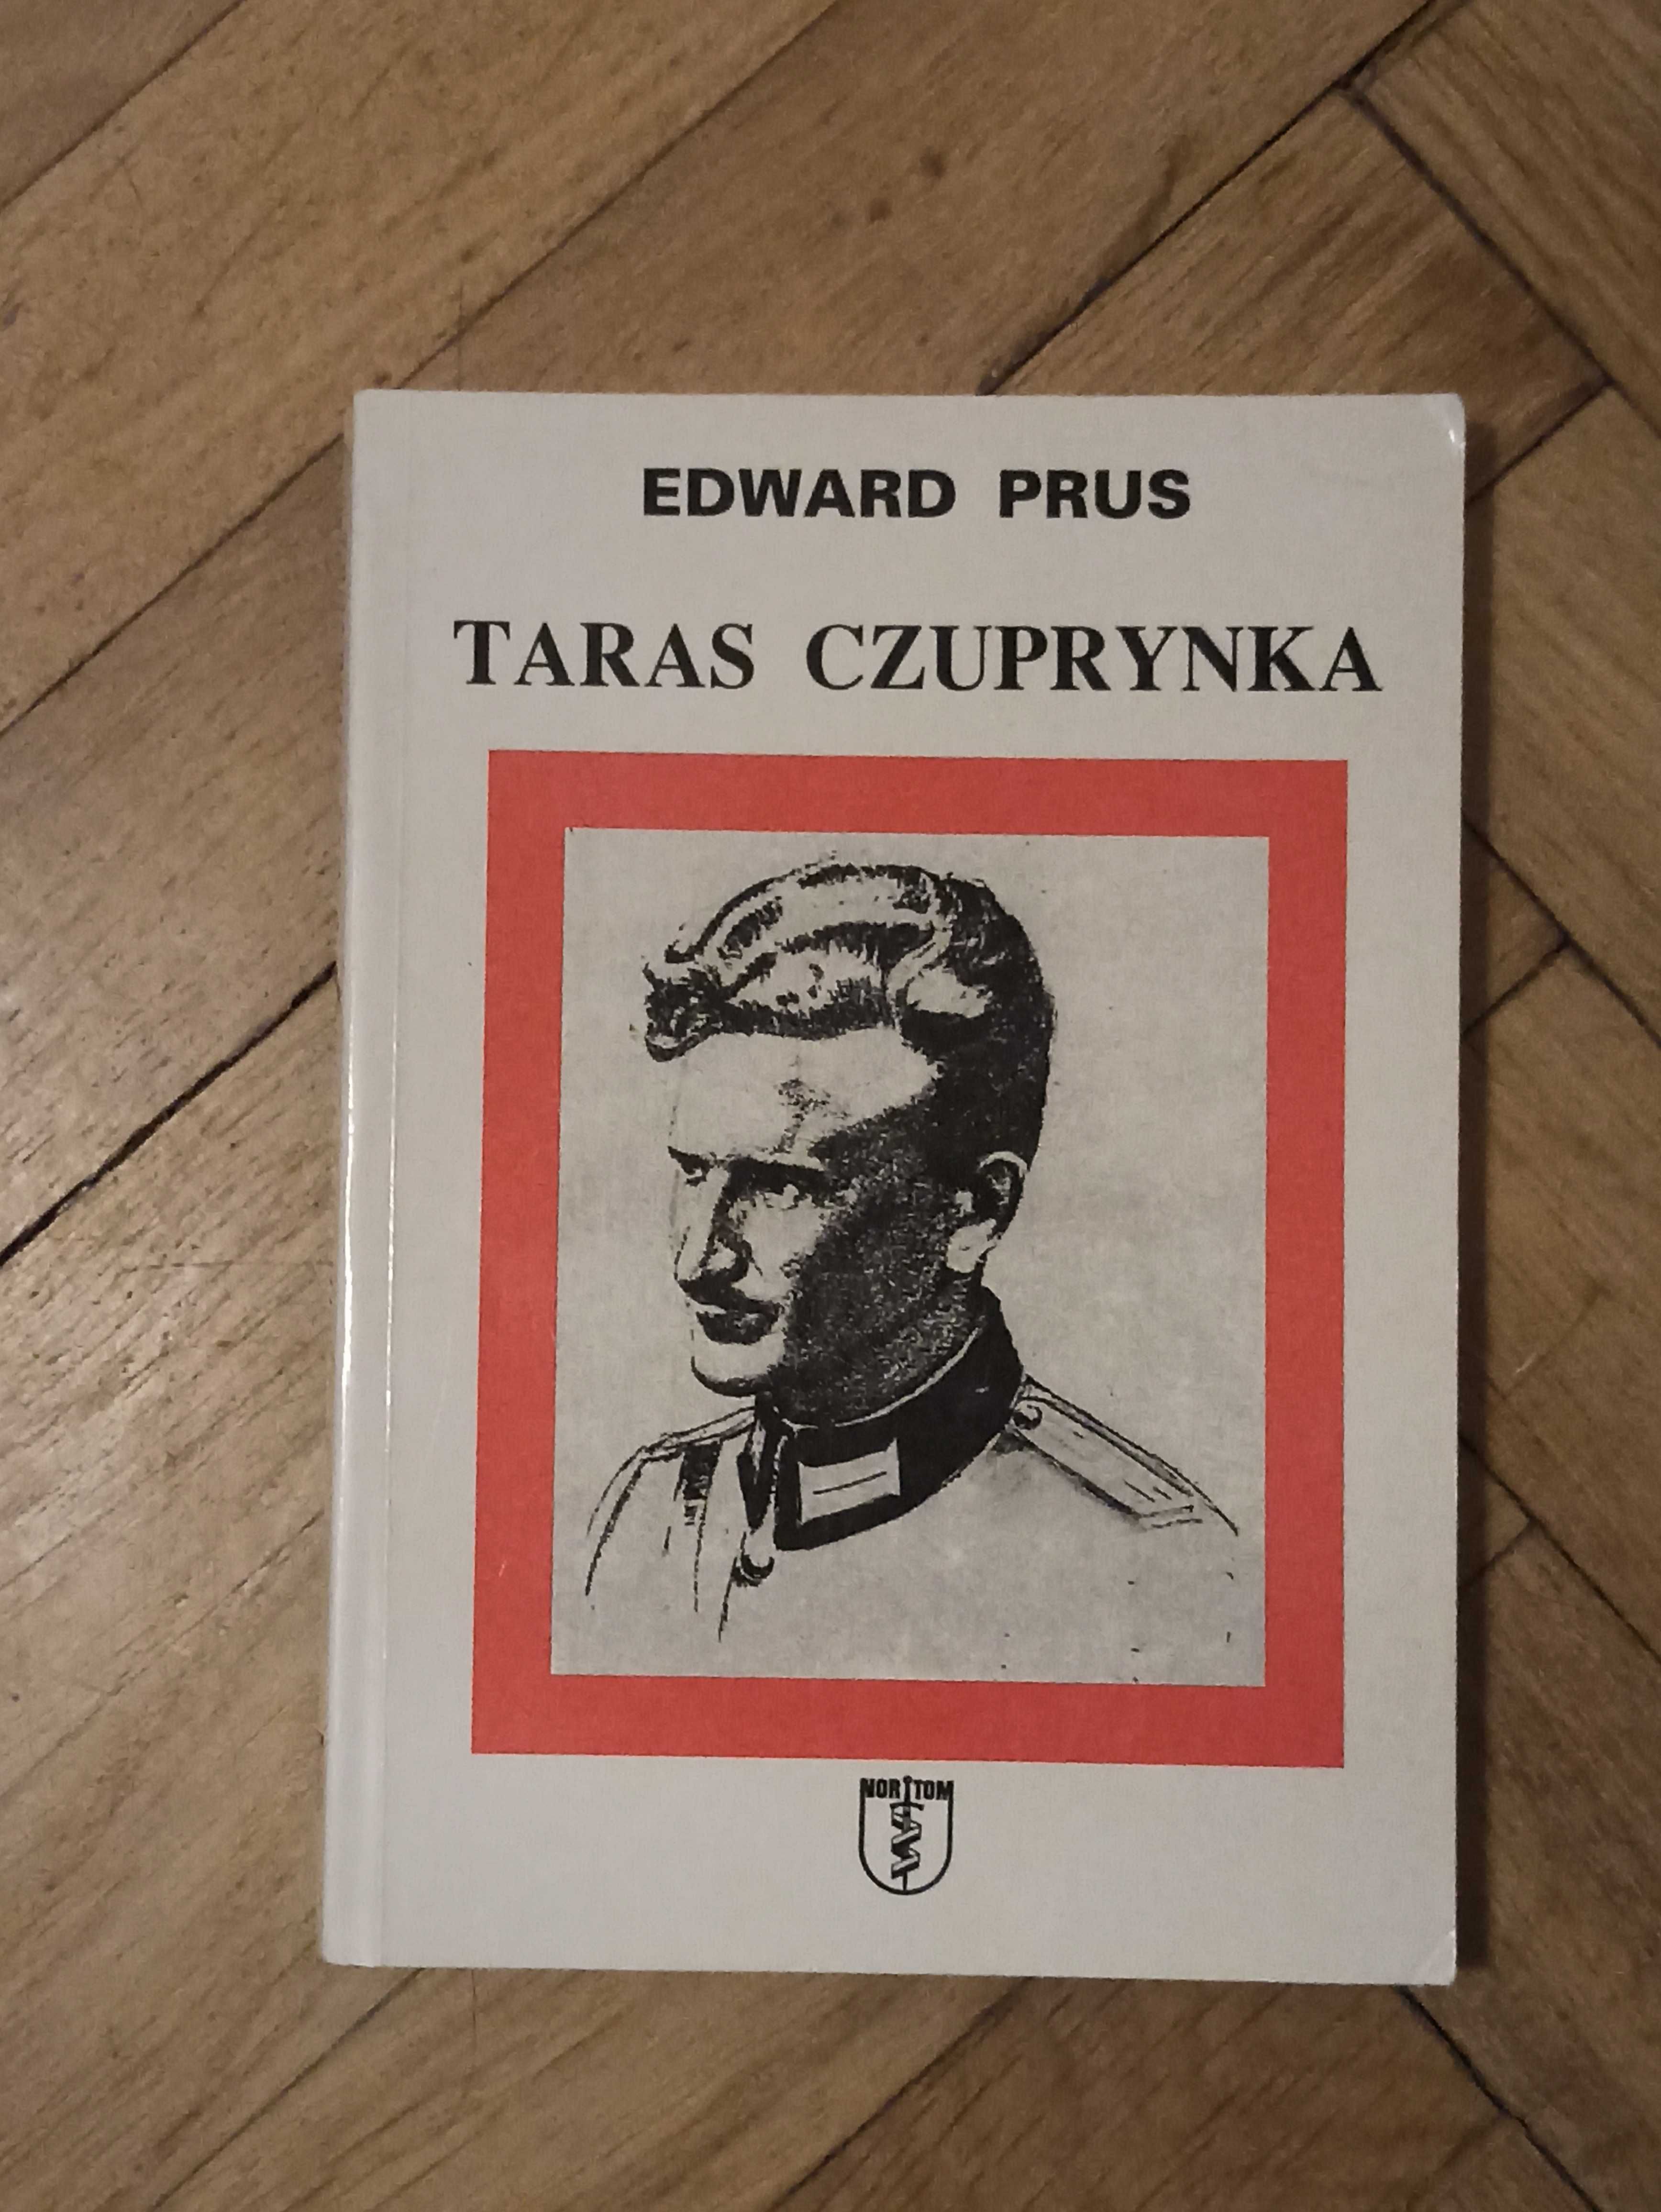 Edward Prus "Taras Czuprynka"